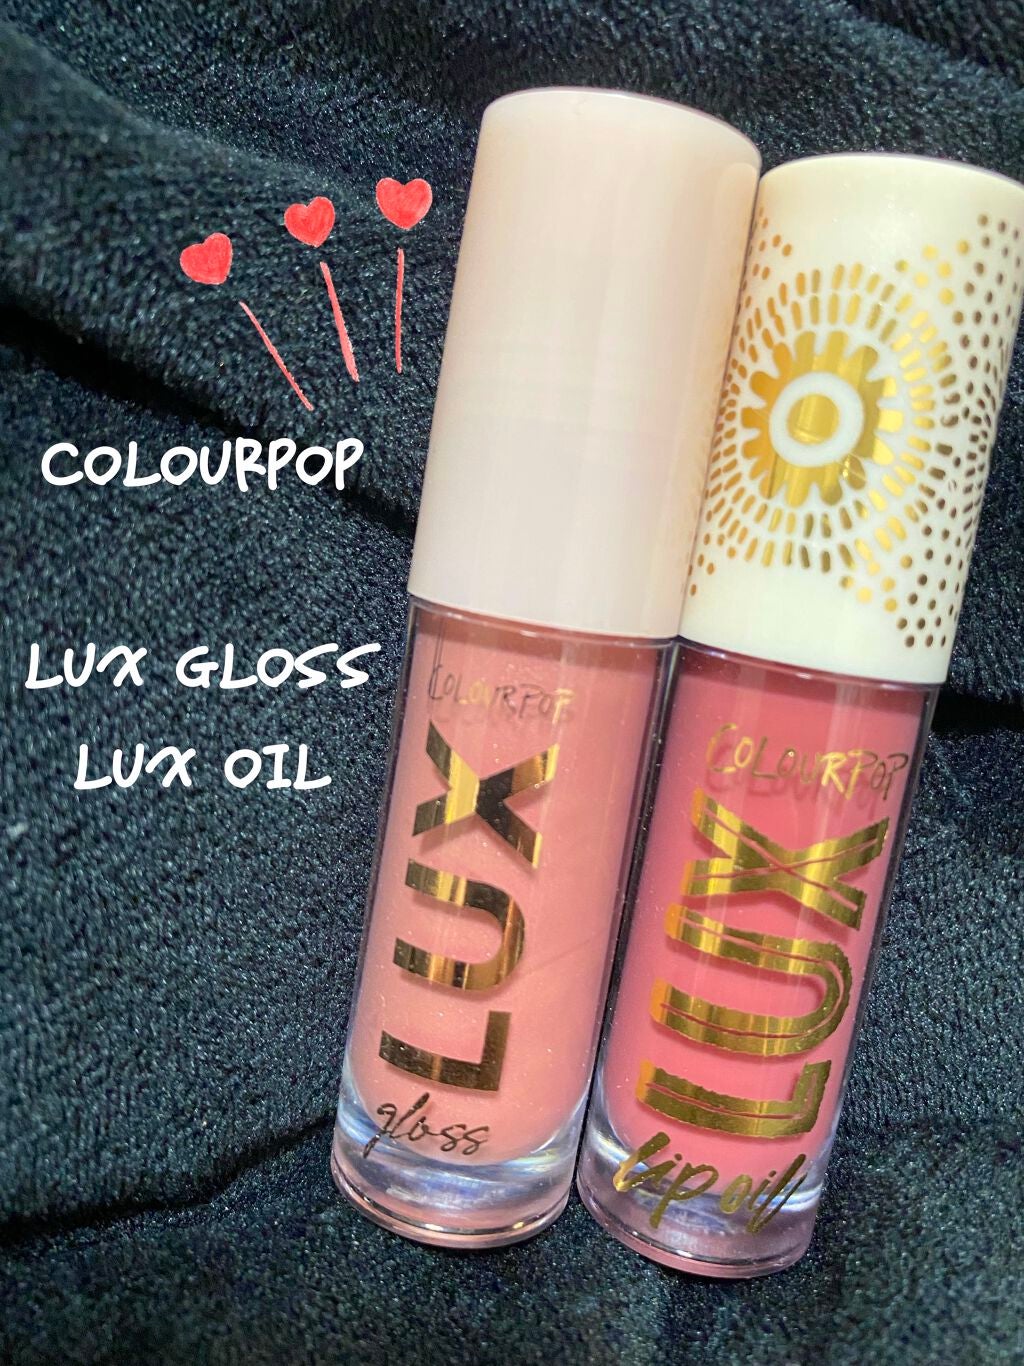 試してみた】Lux Gloss / ColourPopの人気色・イエベブルベ別の口コミ